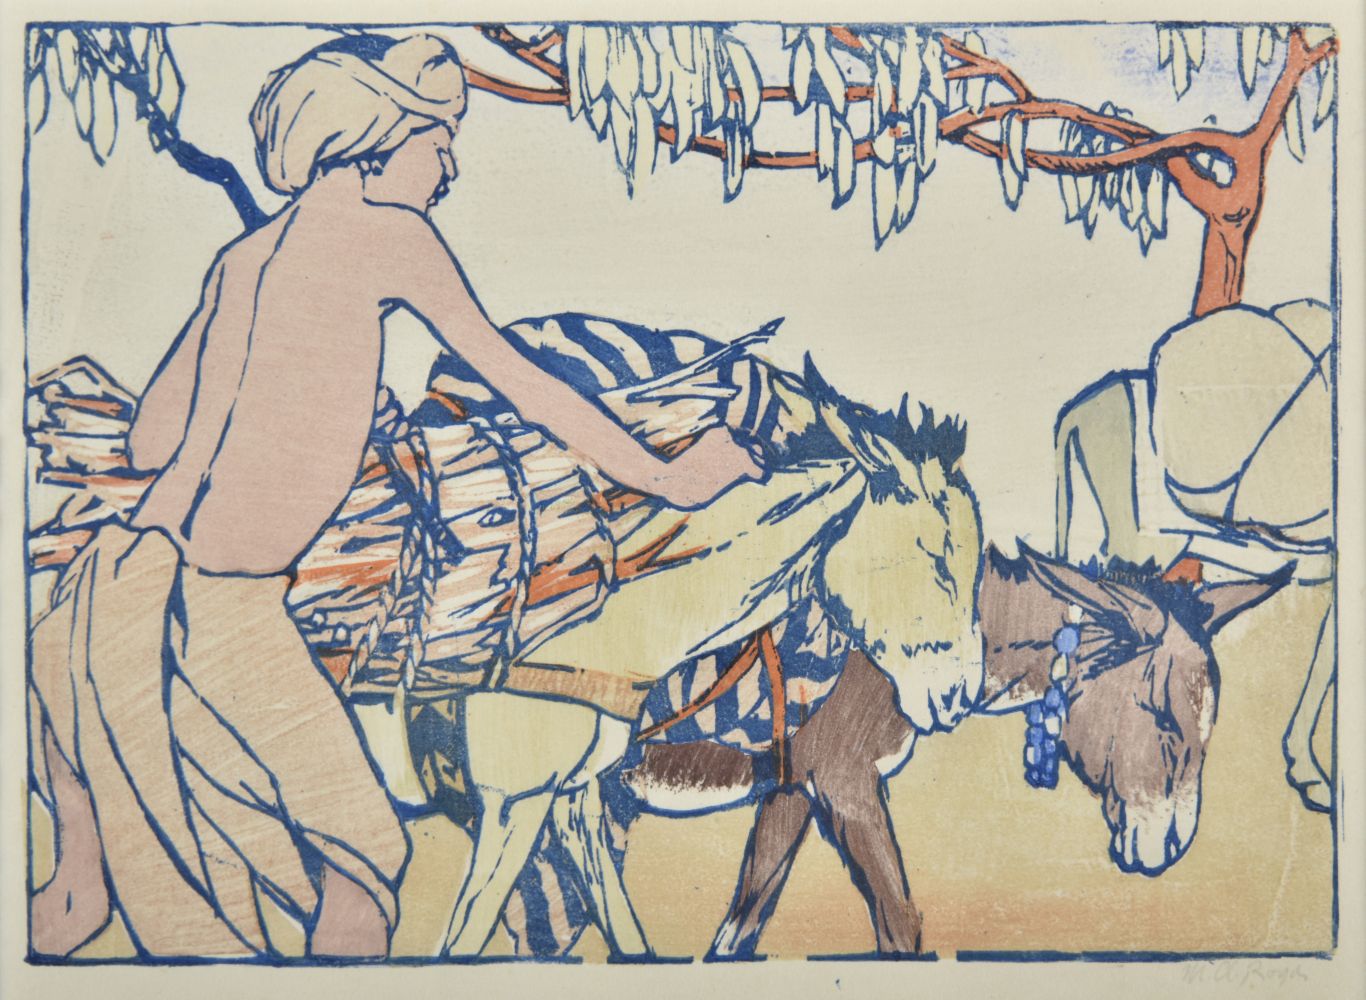 * Royds (Mabel Alington, 1874-1941). The Donkey Boy